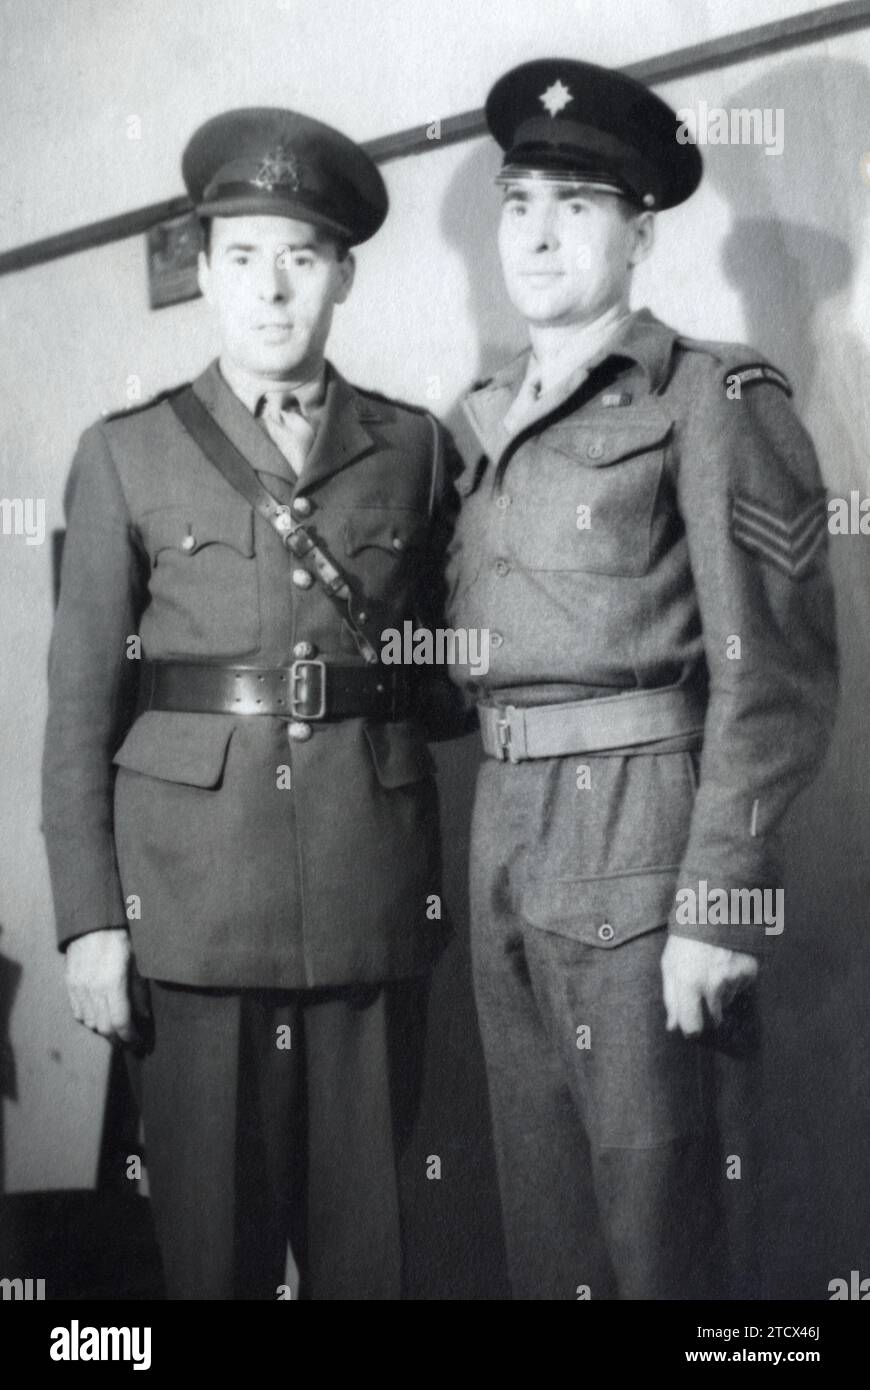 Officier du General Service corps de l'armée britannique avec un sergent de la Garde irlandaise, pris en Allemagne, vers 1945-1946. Banque D'Images